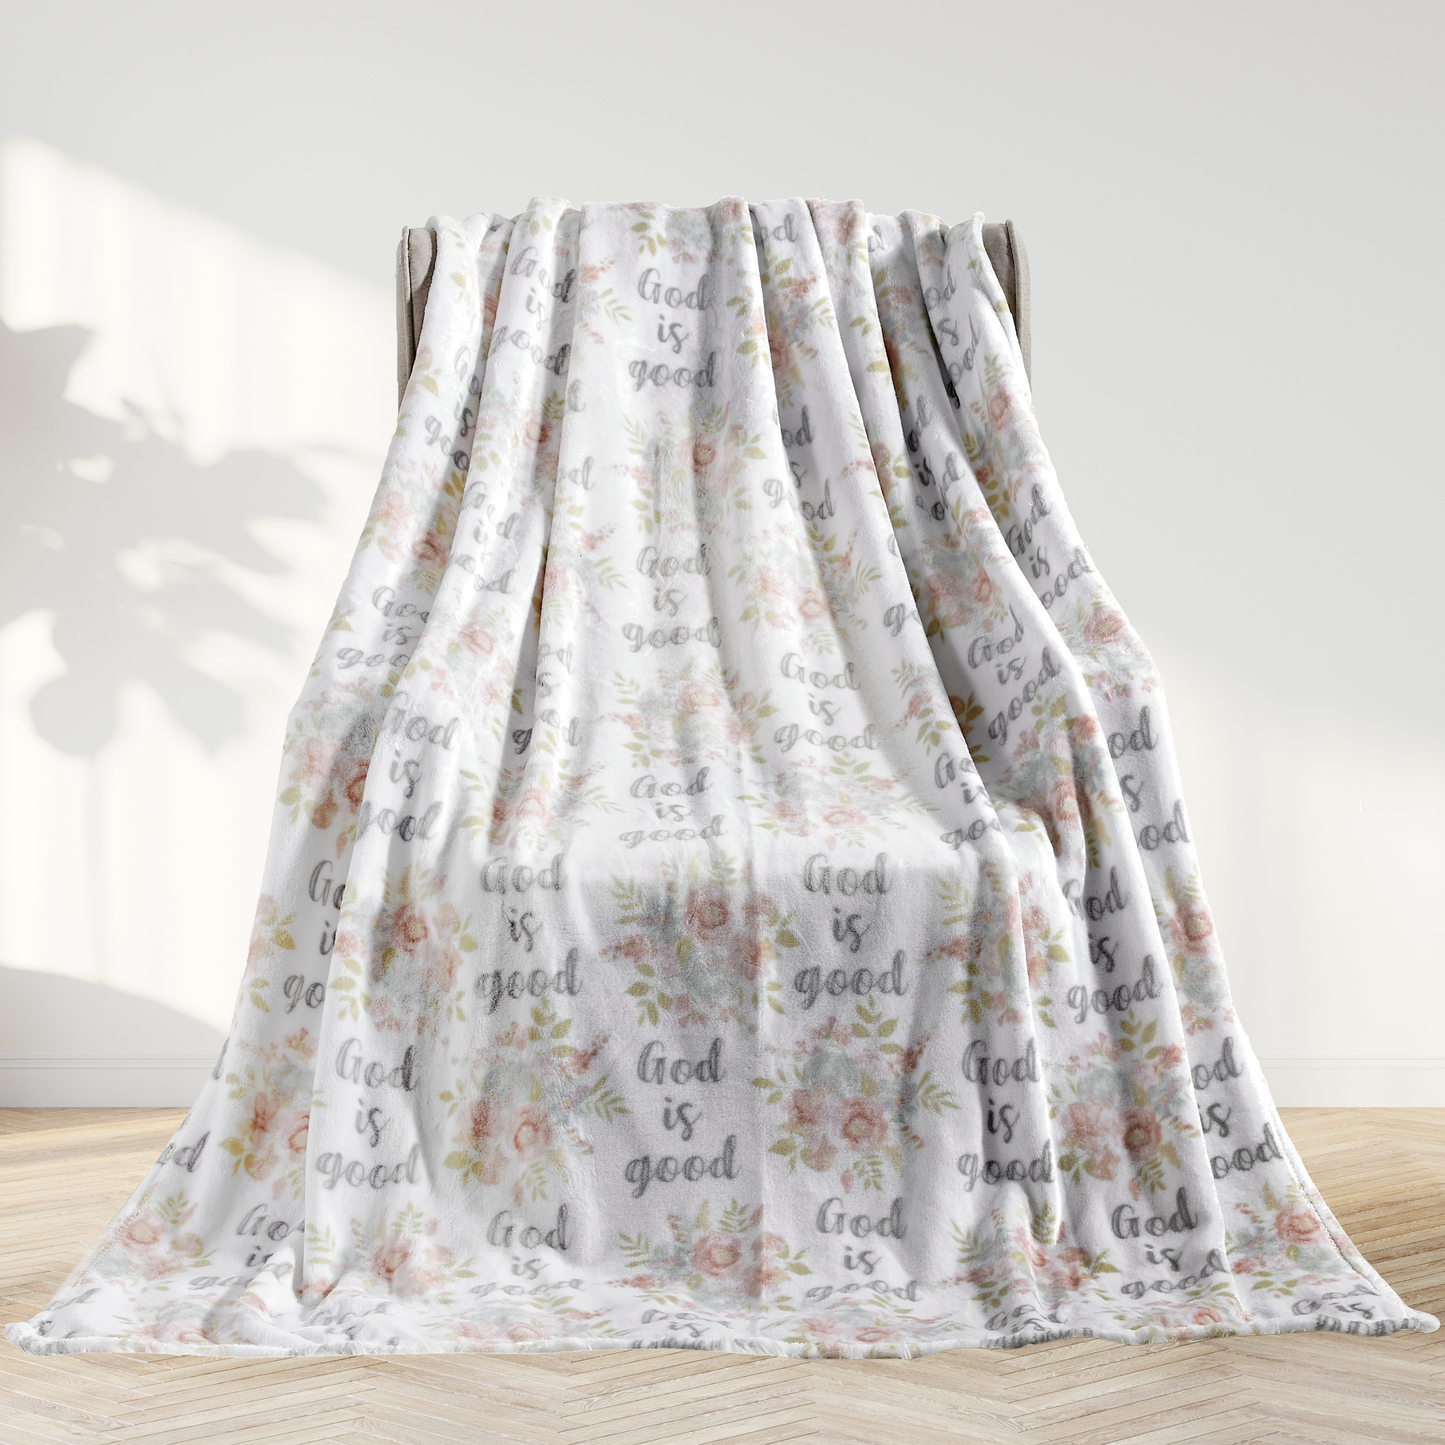 Elegant Comfort Religious Flannel Fleece Throw Blanket - Velvet Feel, 50 x 70 inches